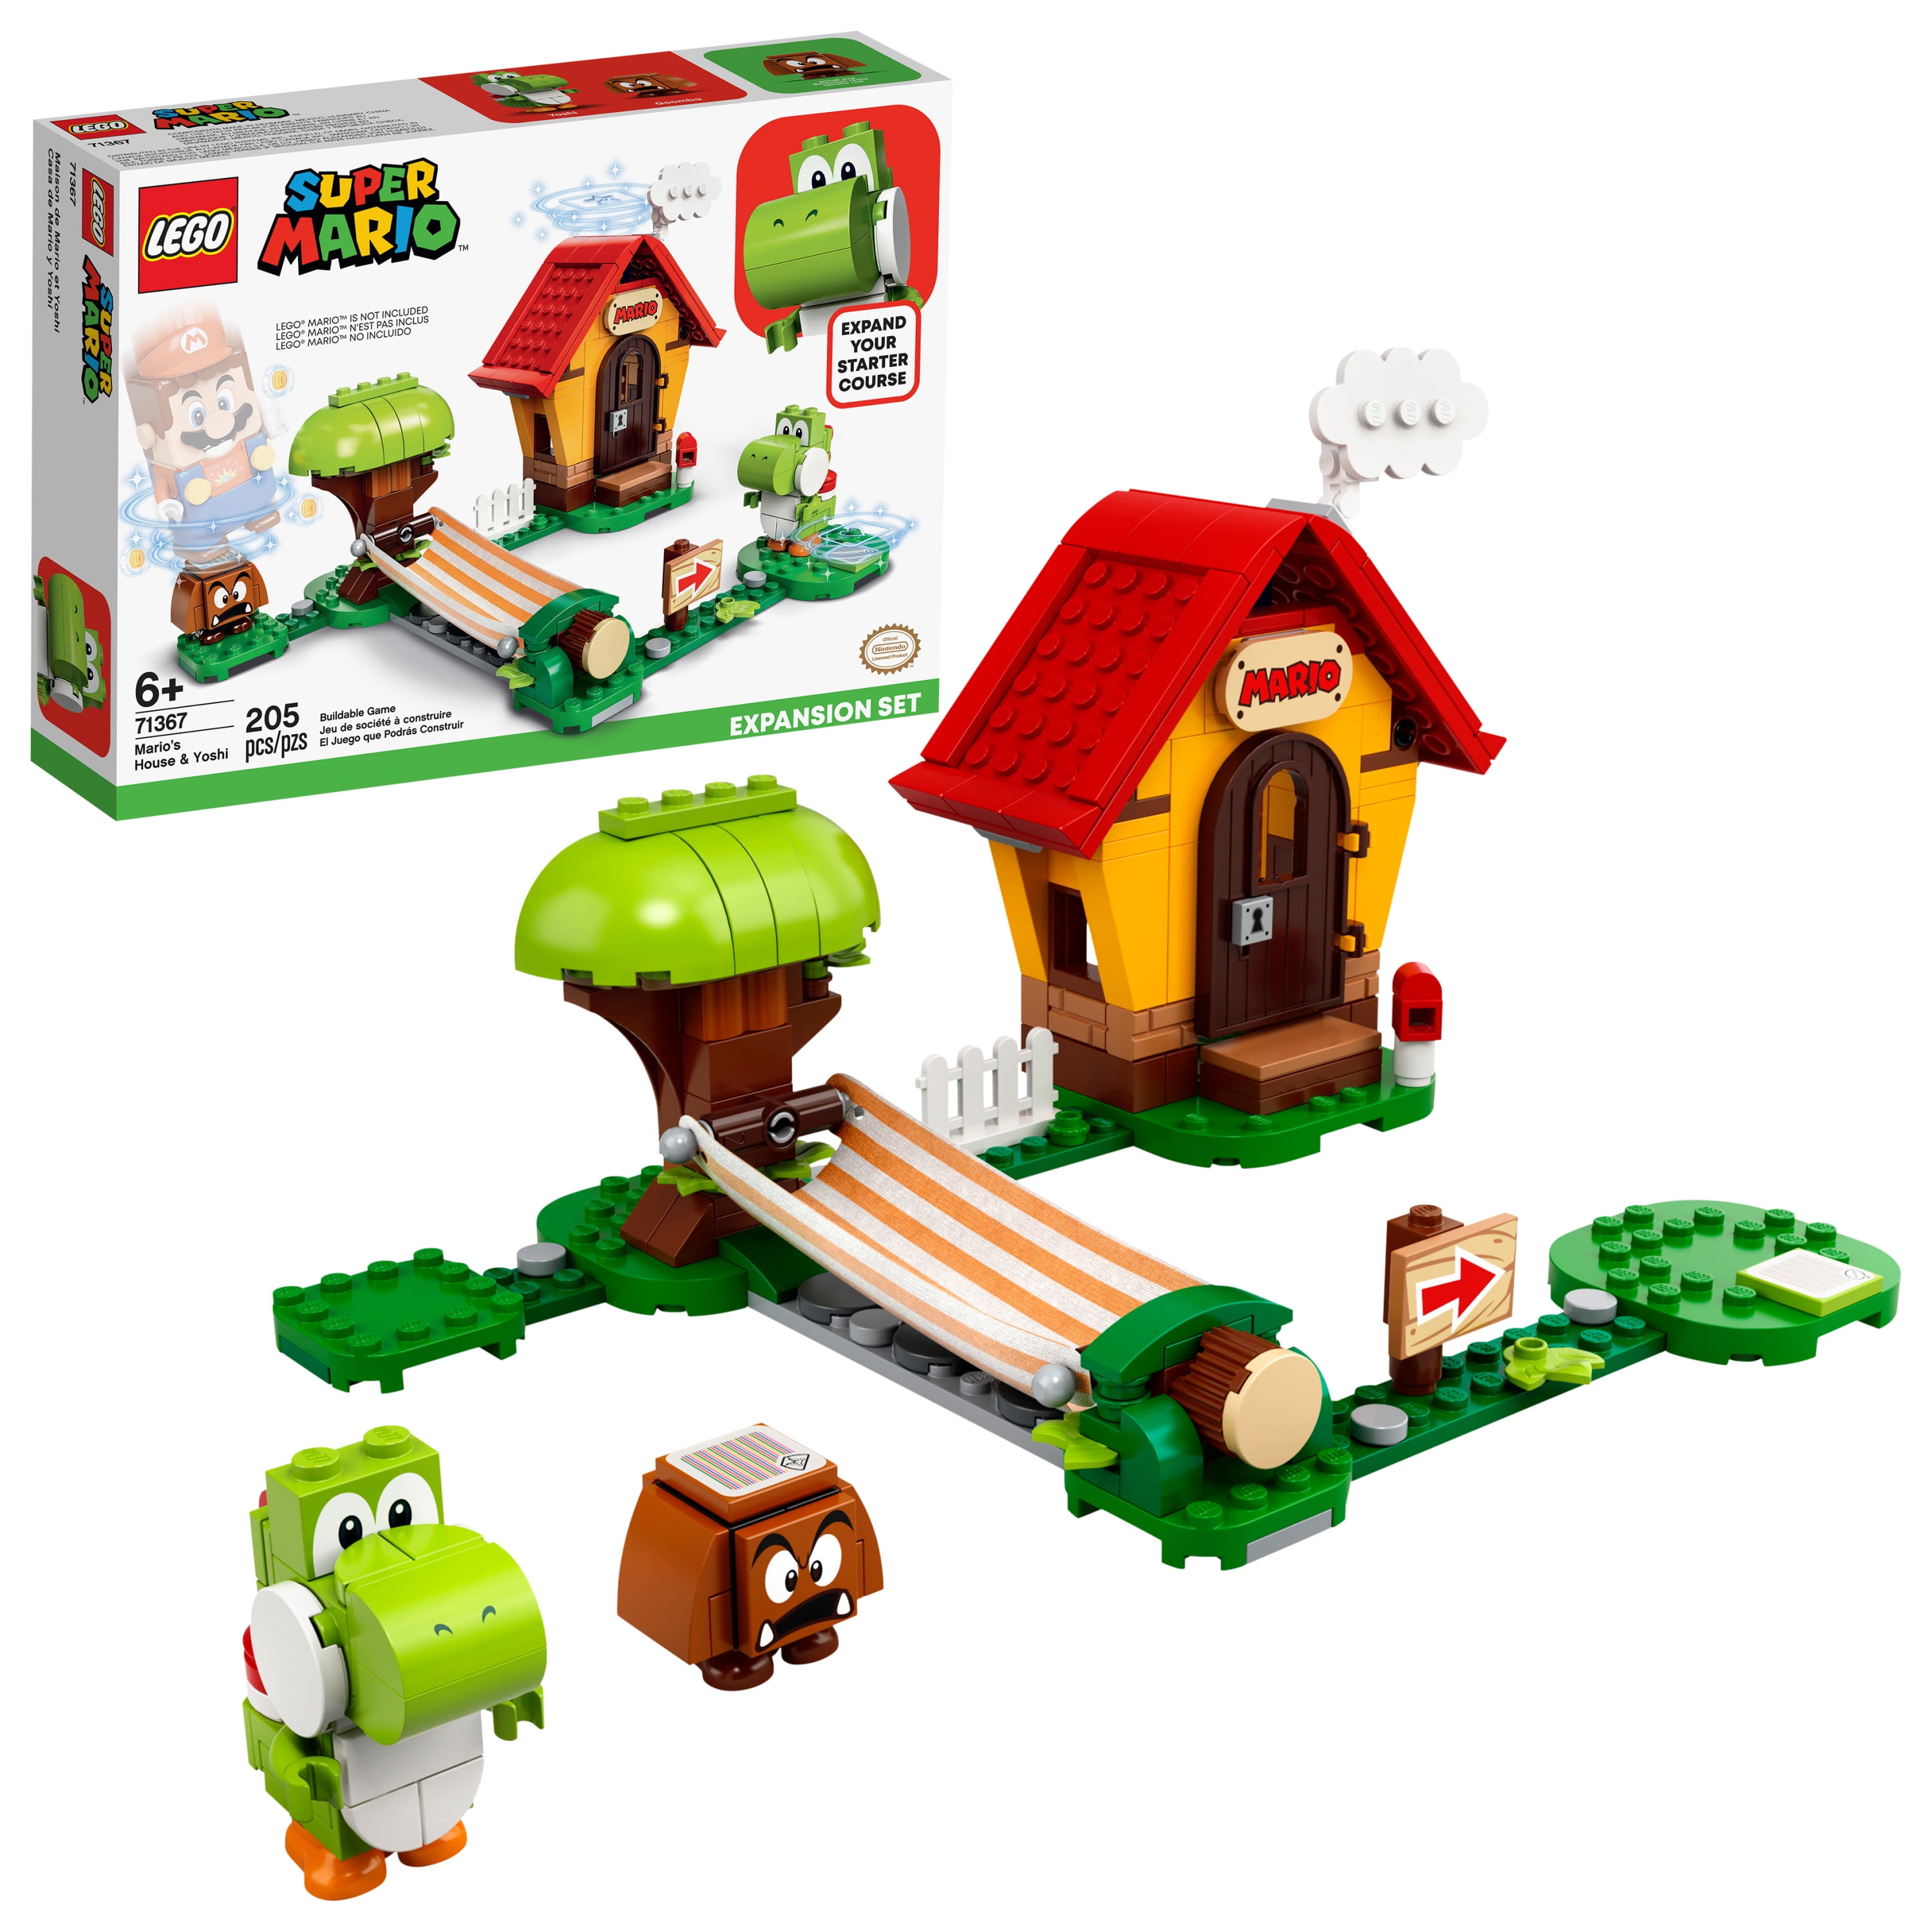 LEGO Super Mario Mario's House & Yoshi 71367